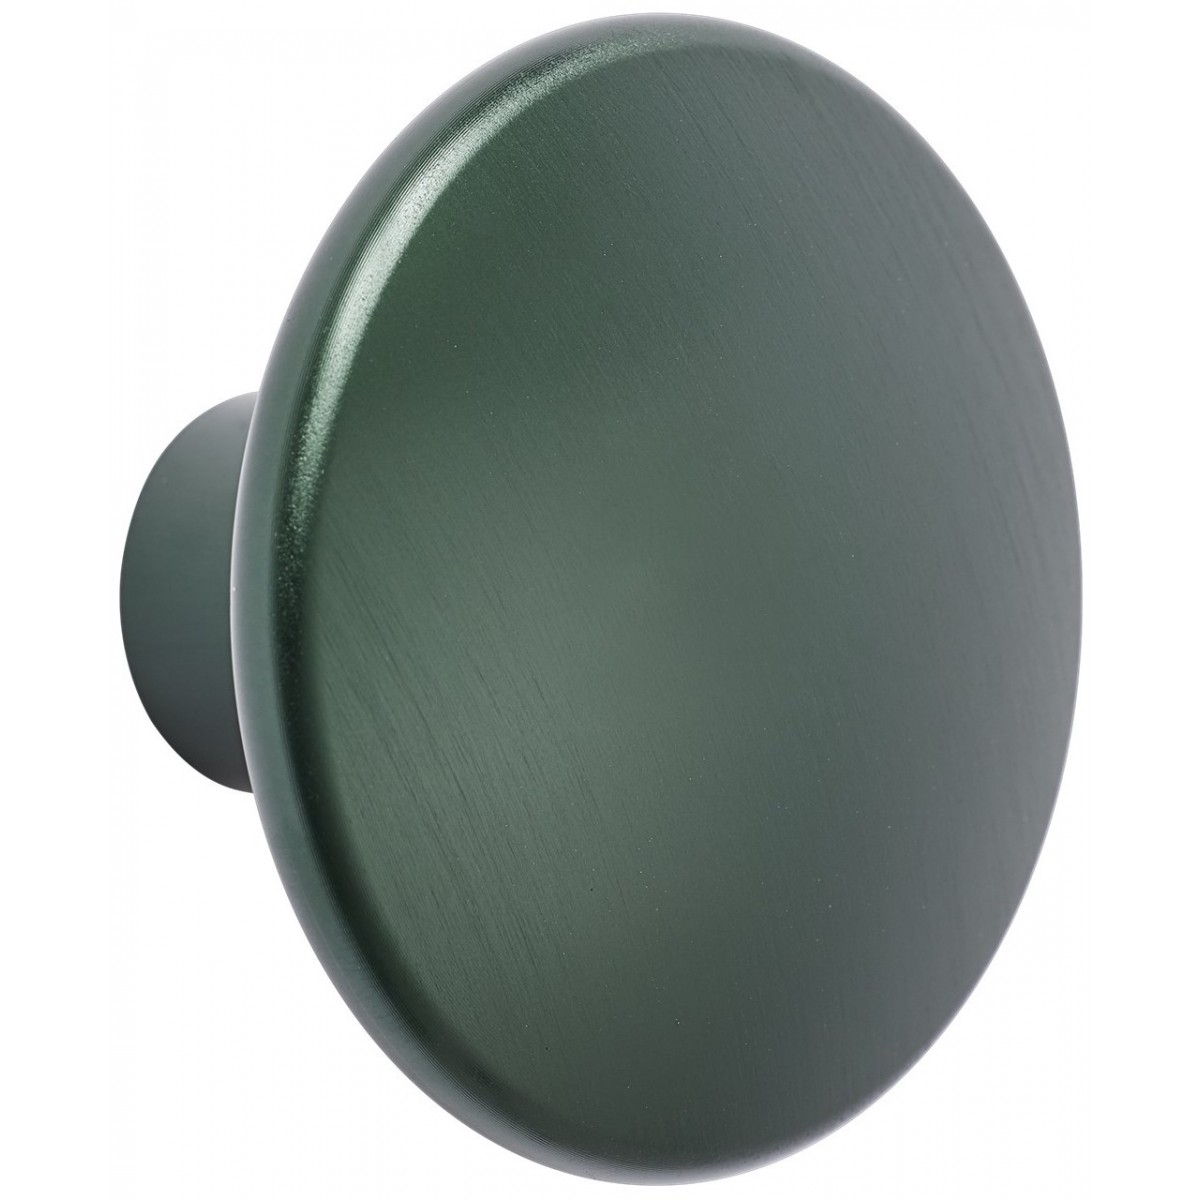 Ø5 cm (L) - dark green - The Dots metal